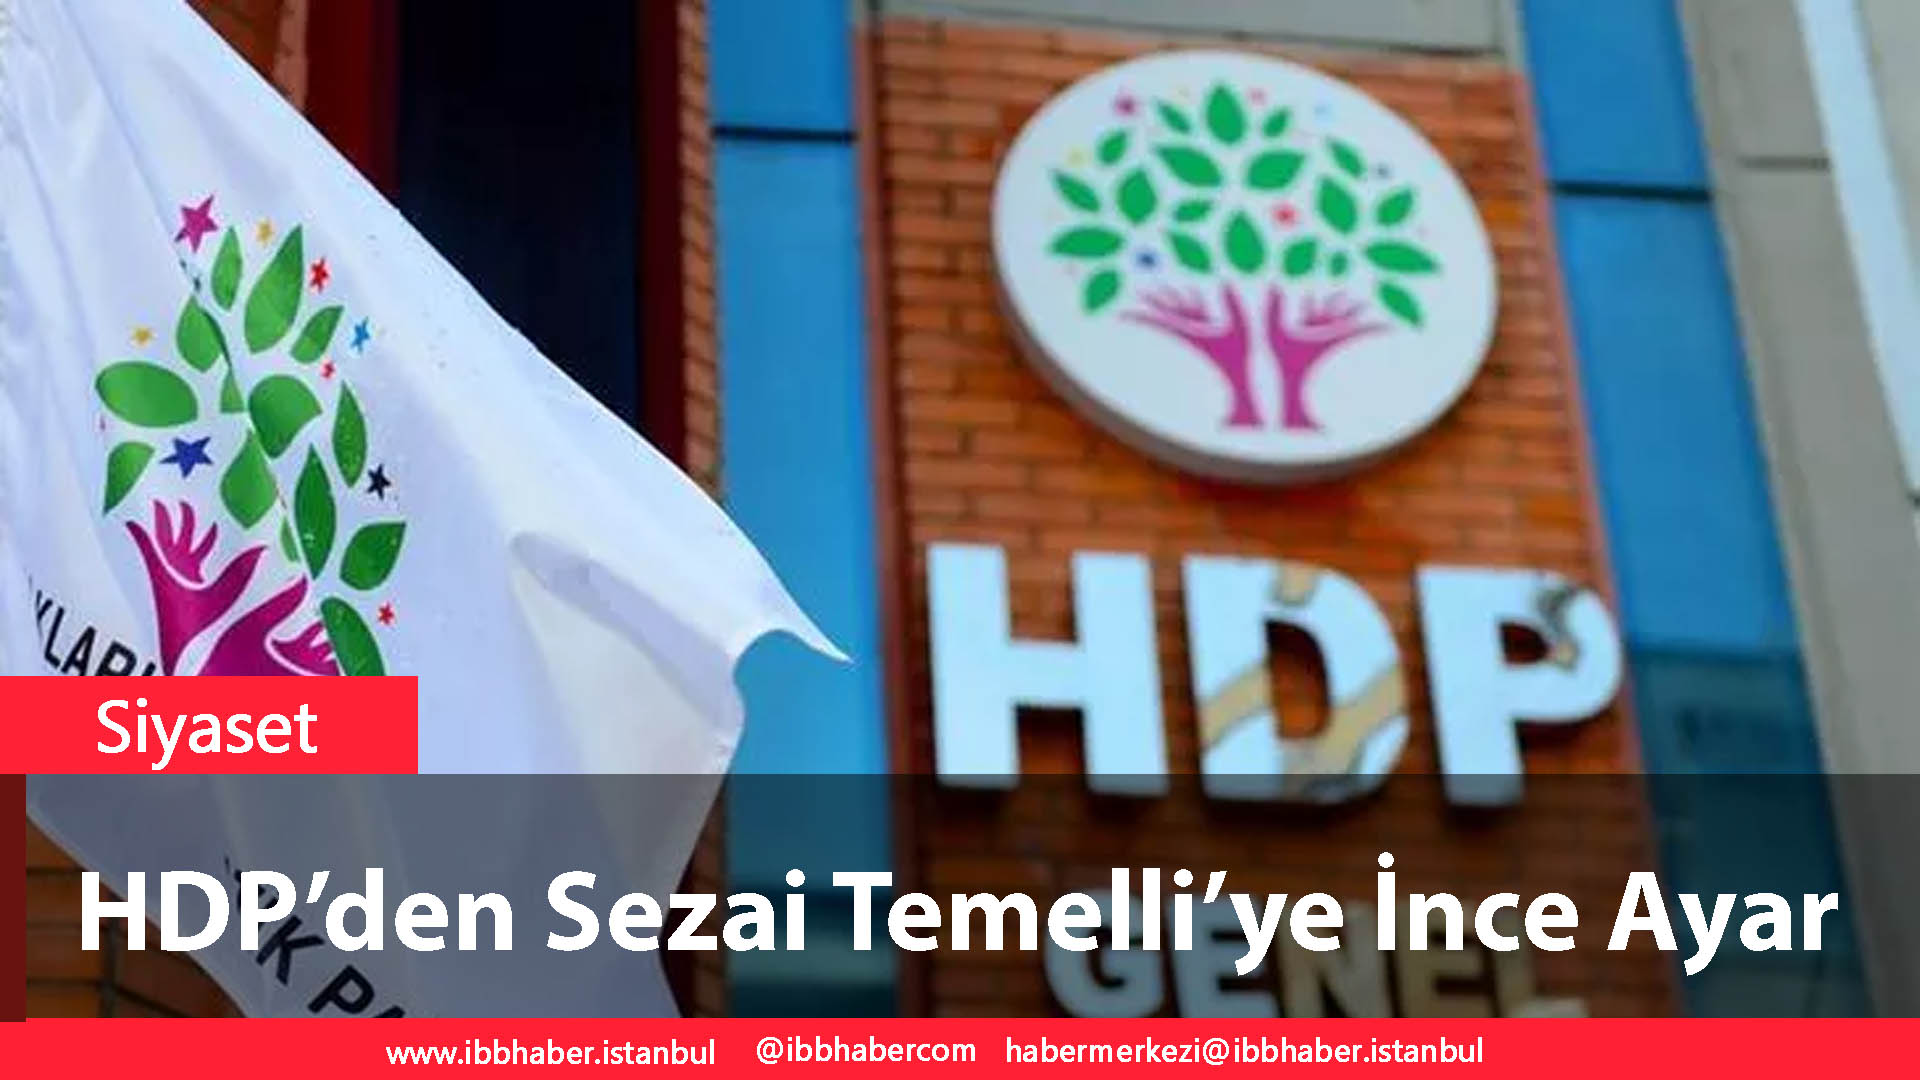 HDP’den Sezai Temelli’ye İnce Ayar